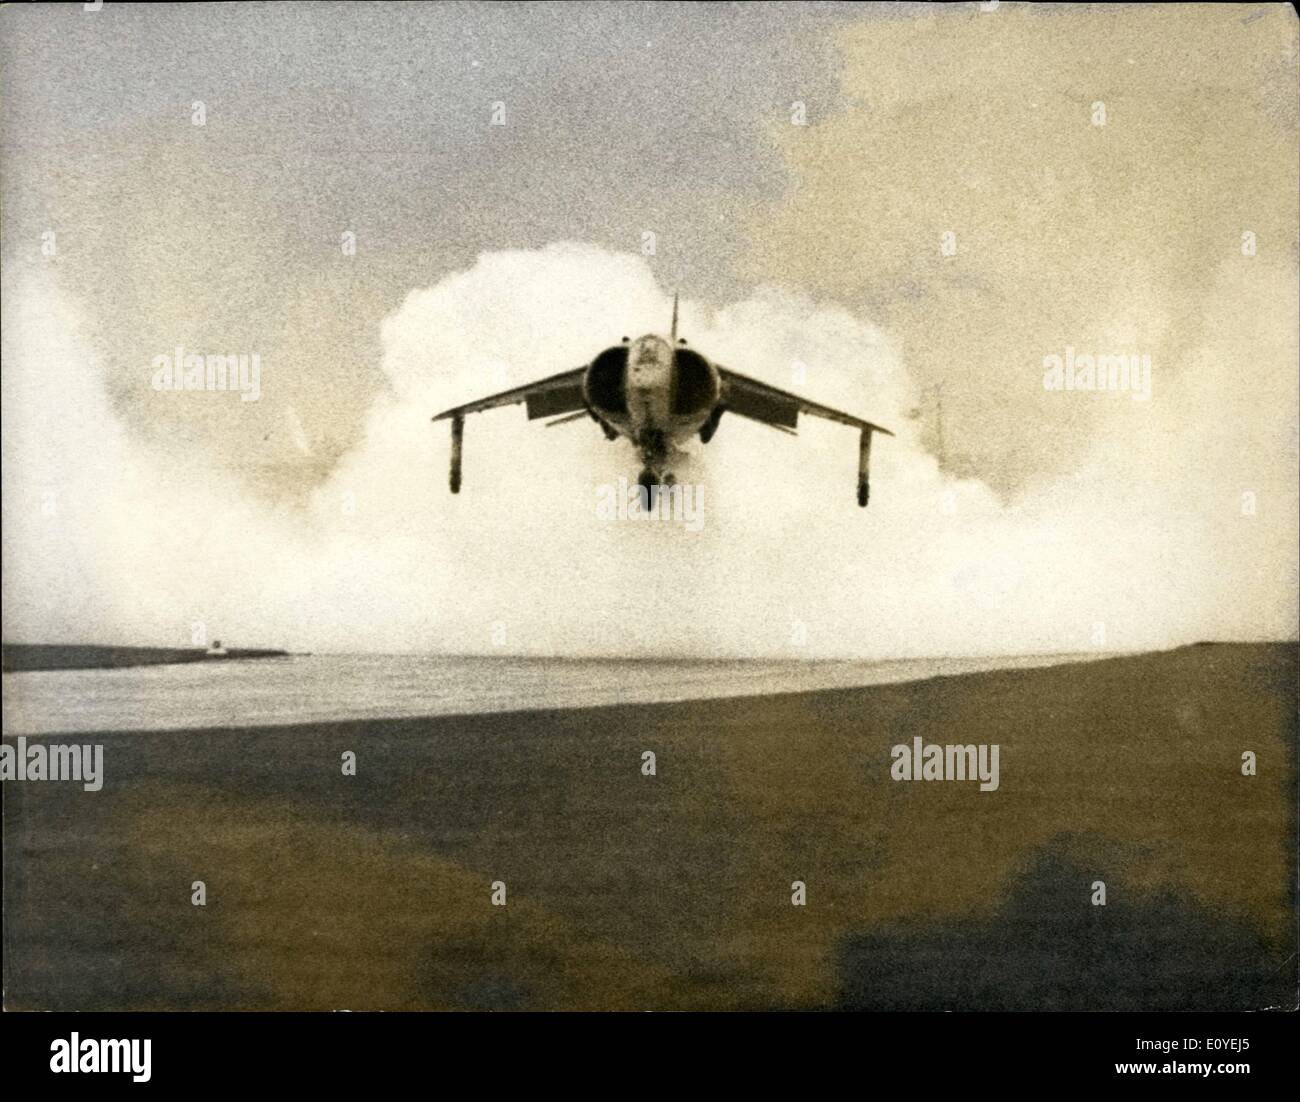 Gen 01, 1970 - Harrier Jump Jet nella dimostrazione. La foto mostra: la vaporizzazione di acqua come la Royal Air Force è di nuovo HAWKER SIDDELEY Harrier verticale di togliere il piano di sciopero è salito durante una dimostrazione a Hatfield, Herts, ieri. Foto Stock